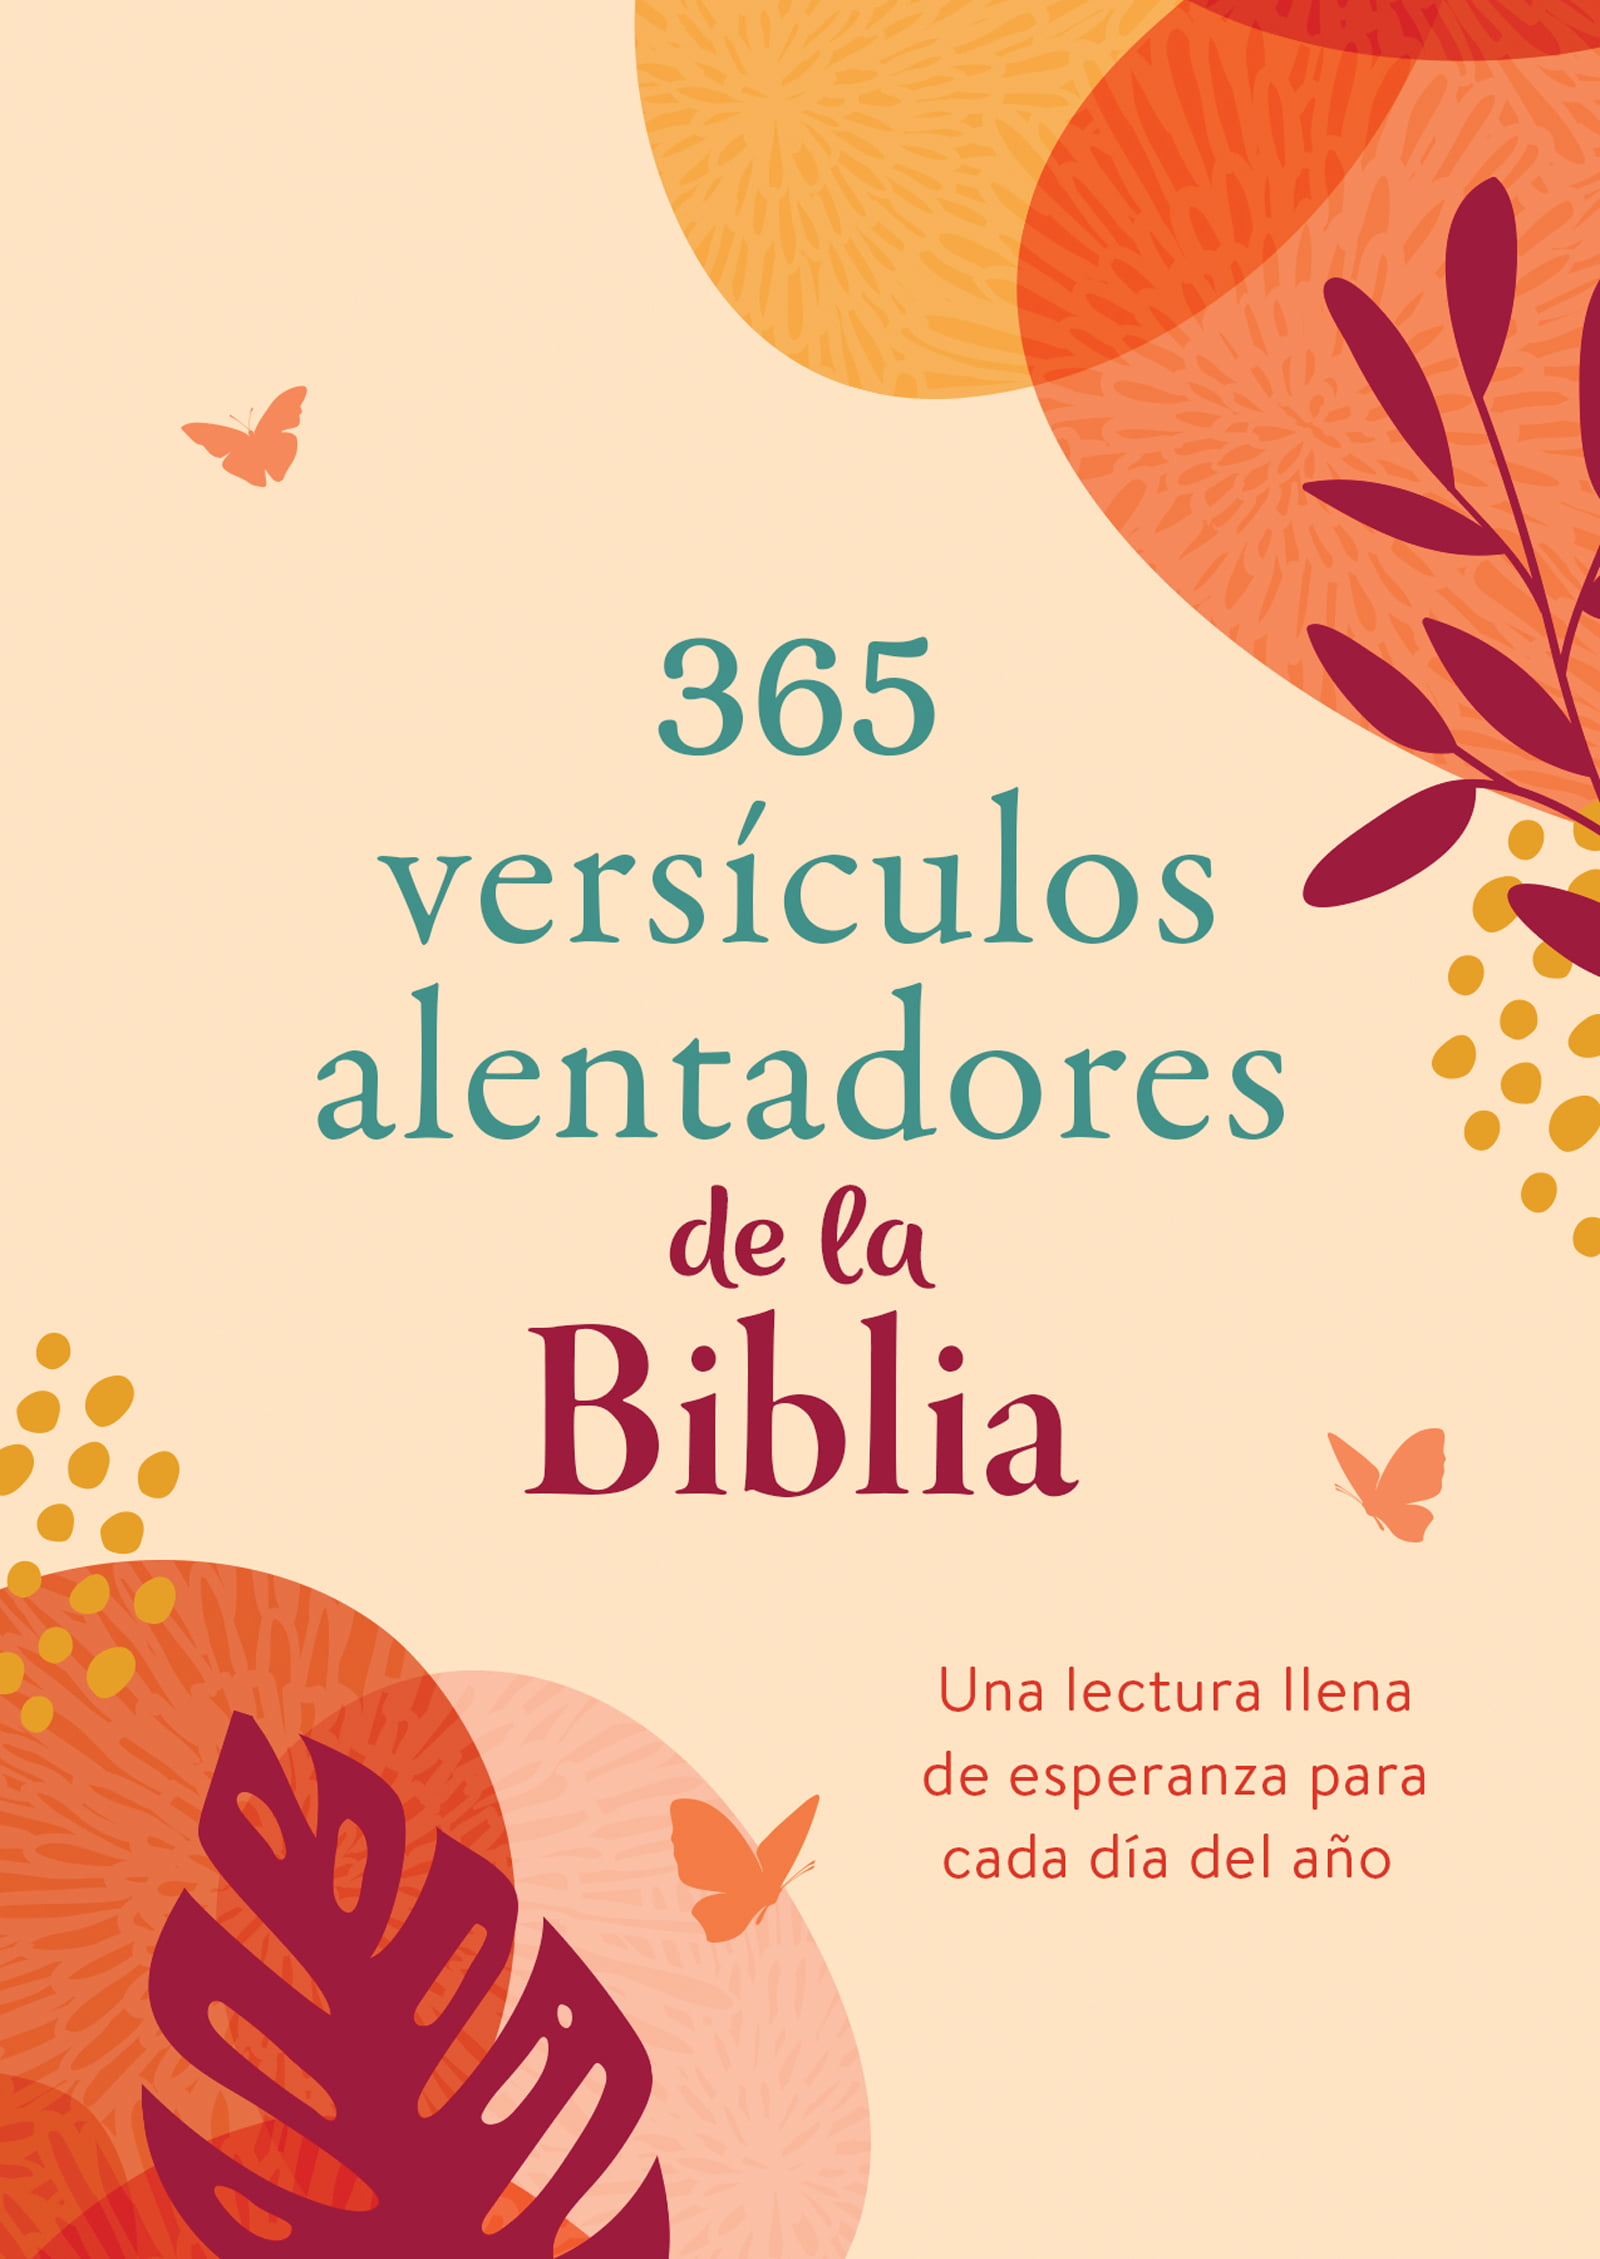 365-versiculos-alentadores-de-la-Biblia